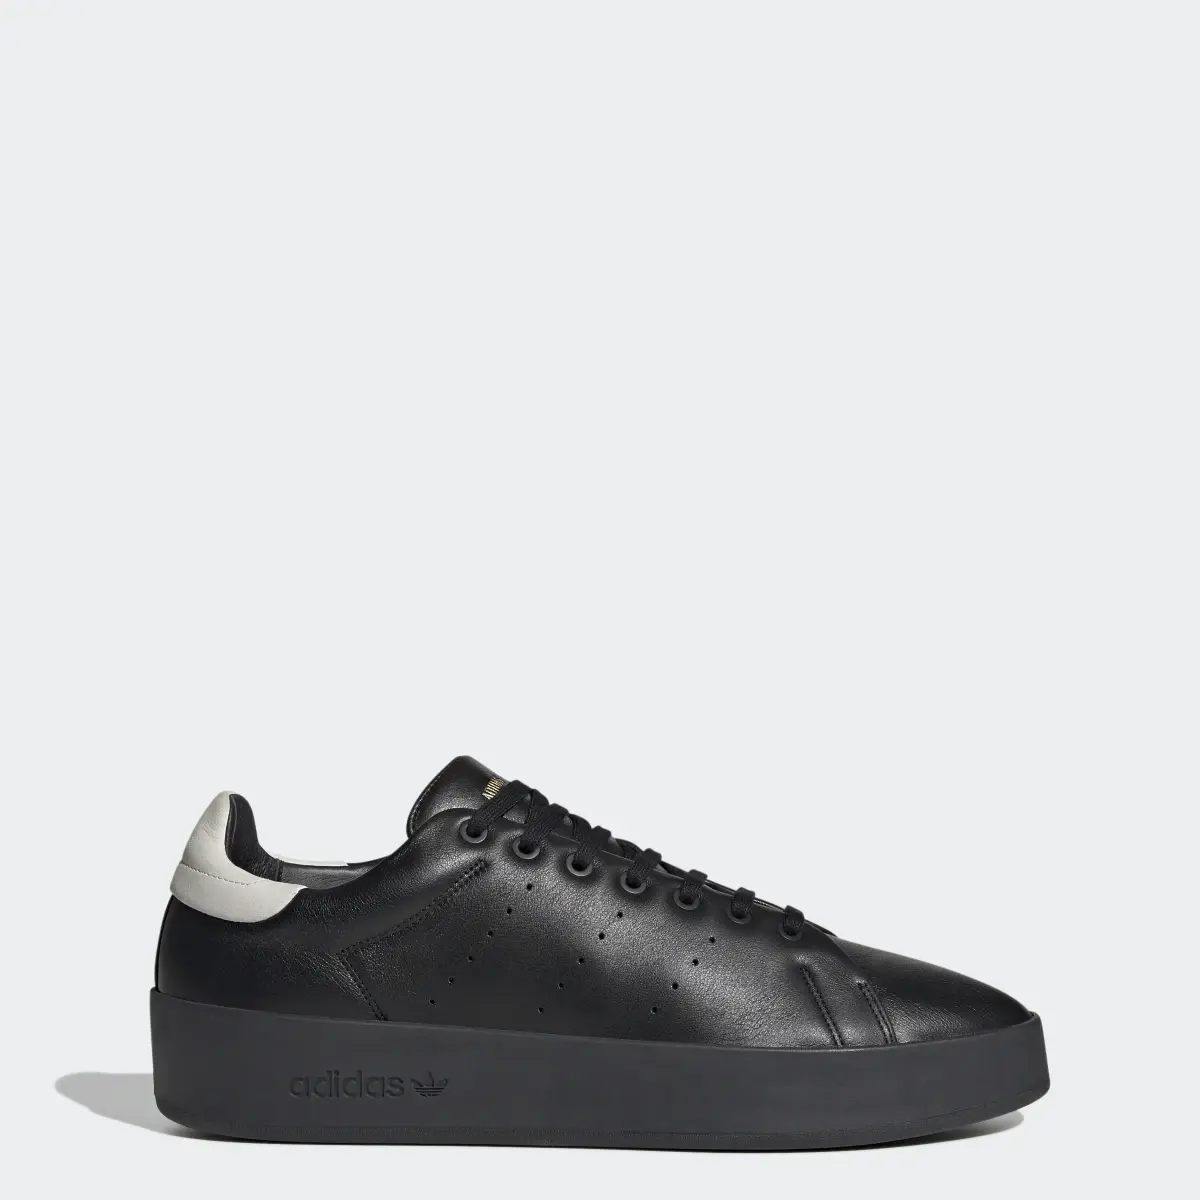 Adidas Stan Smith Recon Schuh. 1